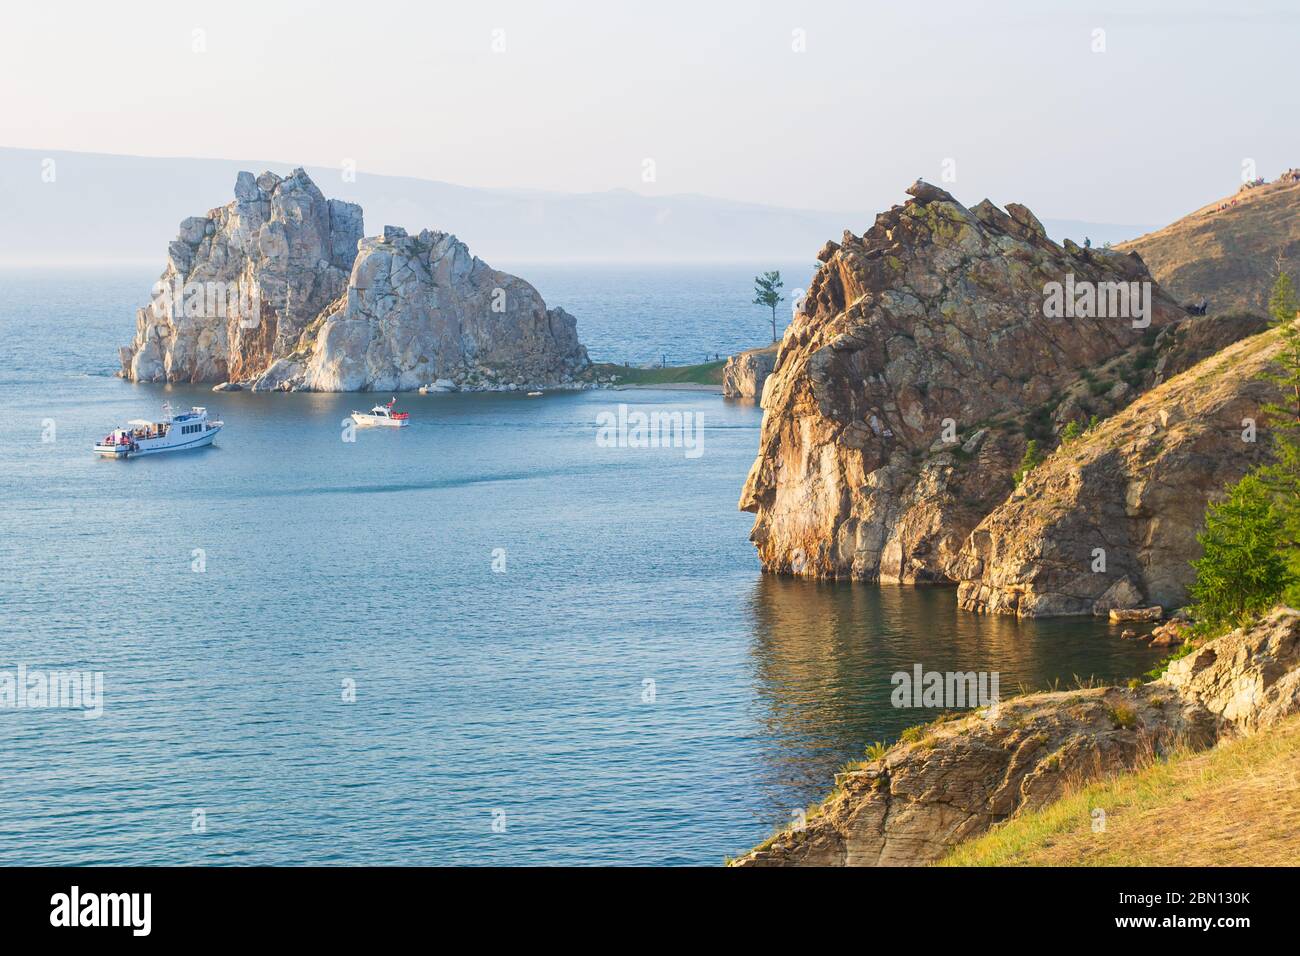 La côte rocheuse de l'île d'Olkhon et du Cap Burhan, en soirée d'été, aux rayons du soleil couchant. Bateaux de plaisance dans les eaux bleues du lac Baikal Banque D'Images